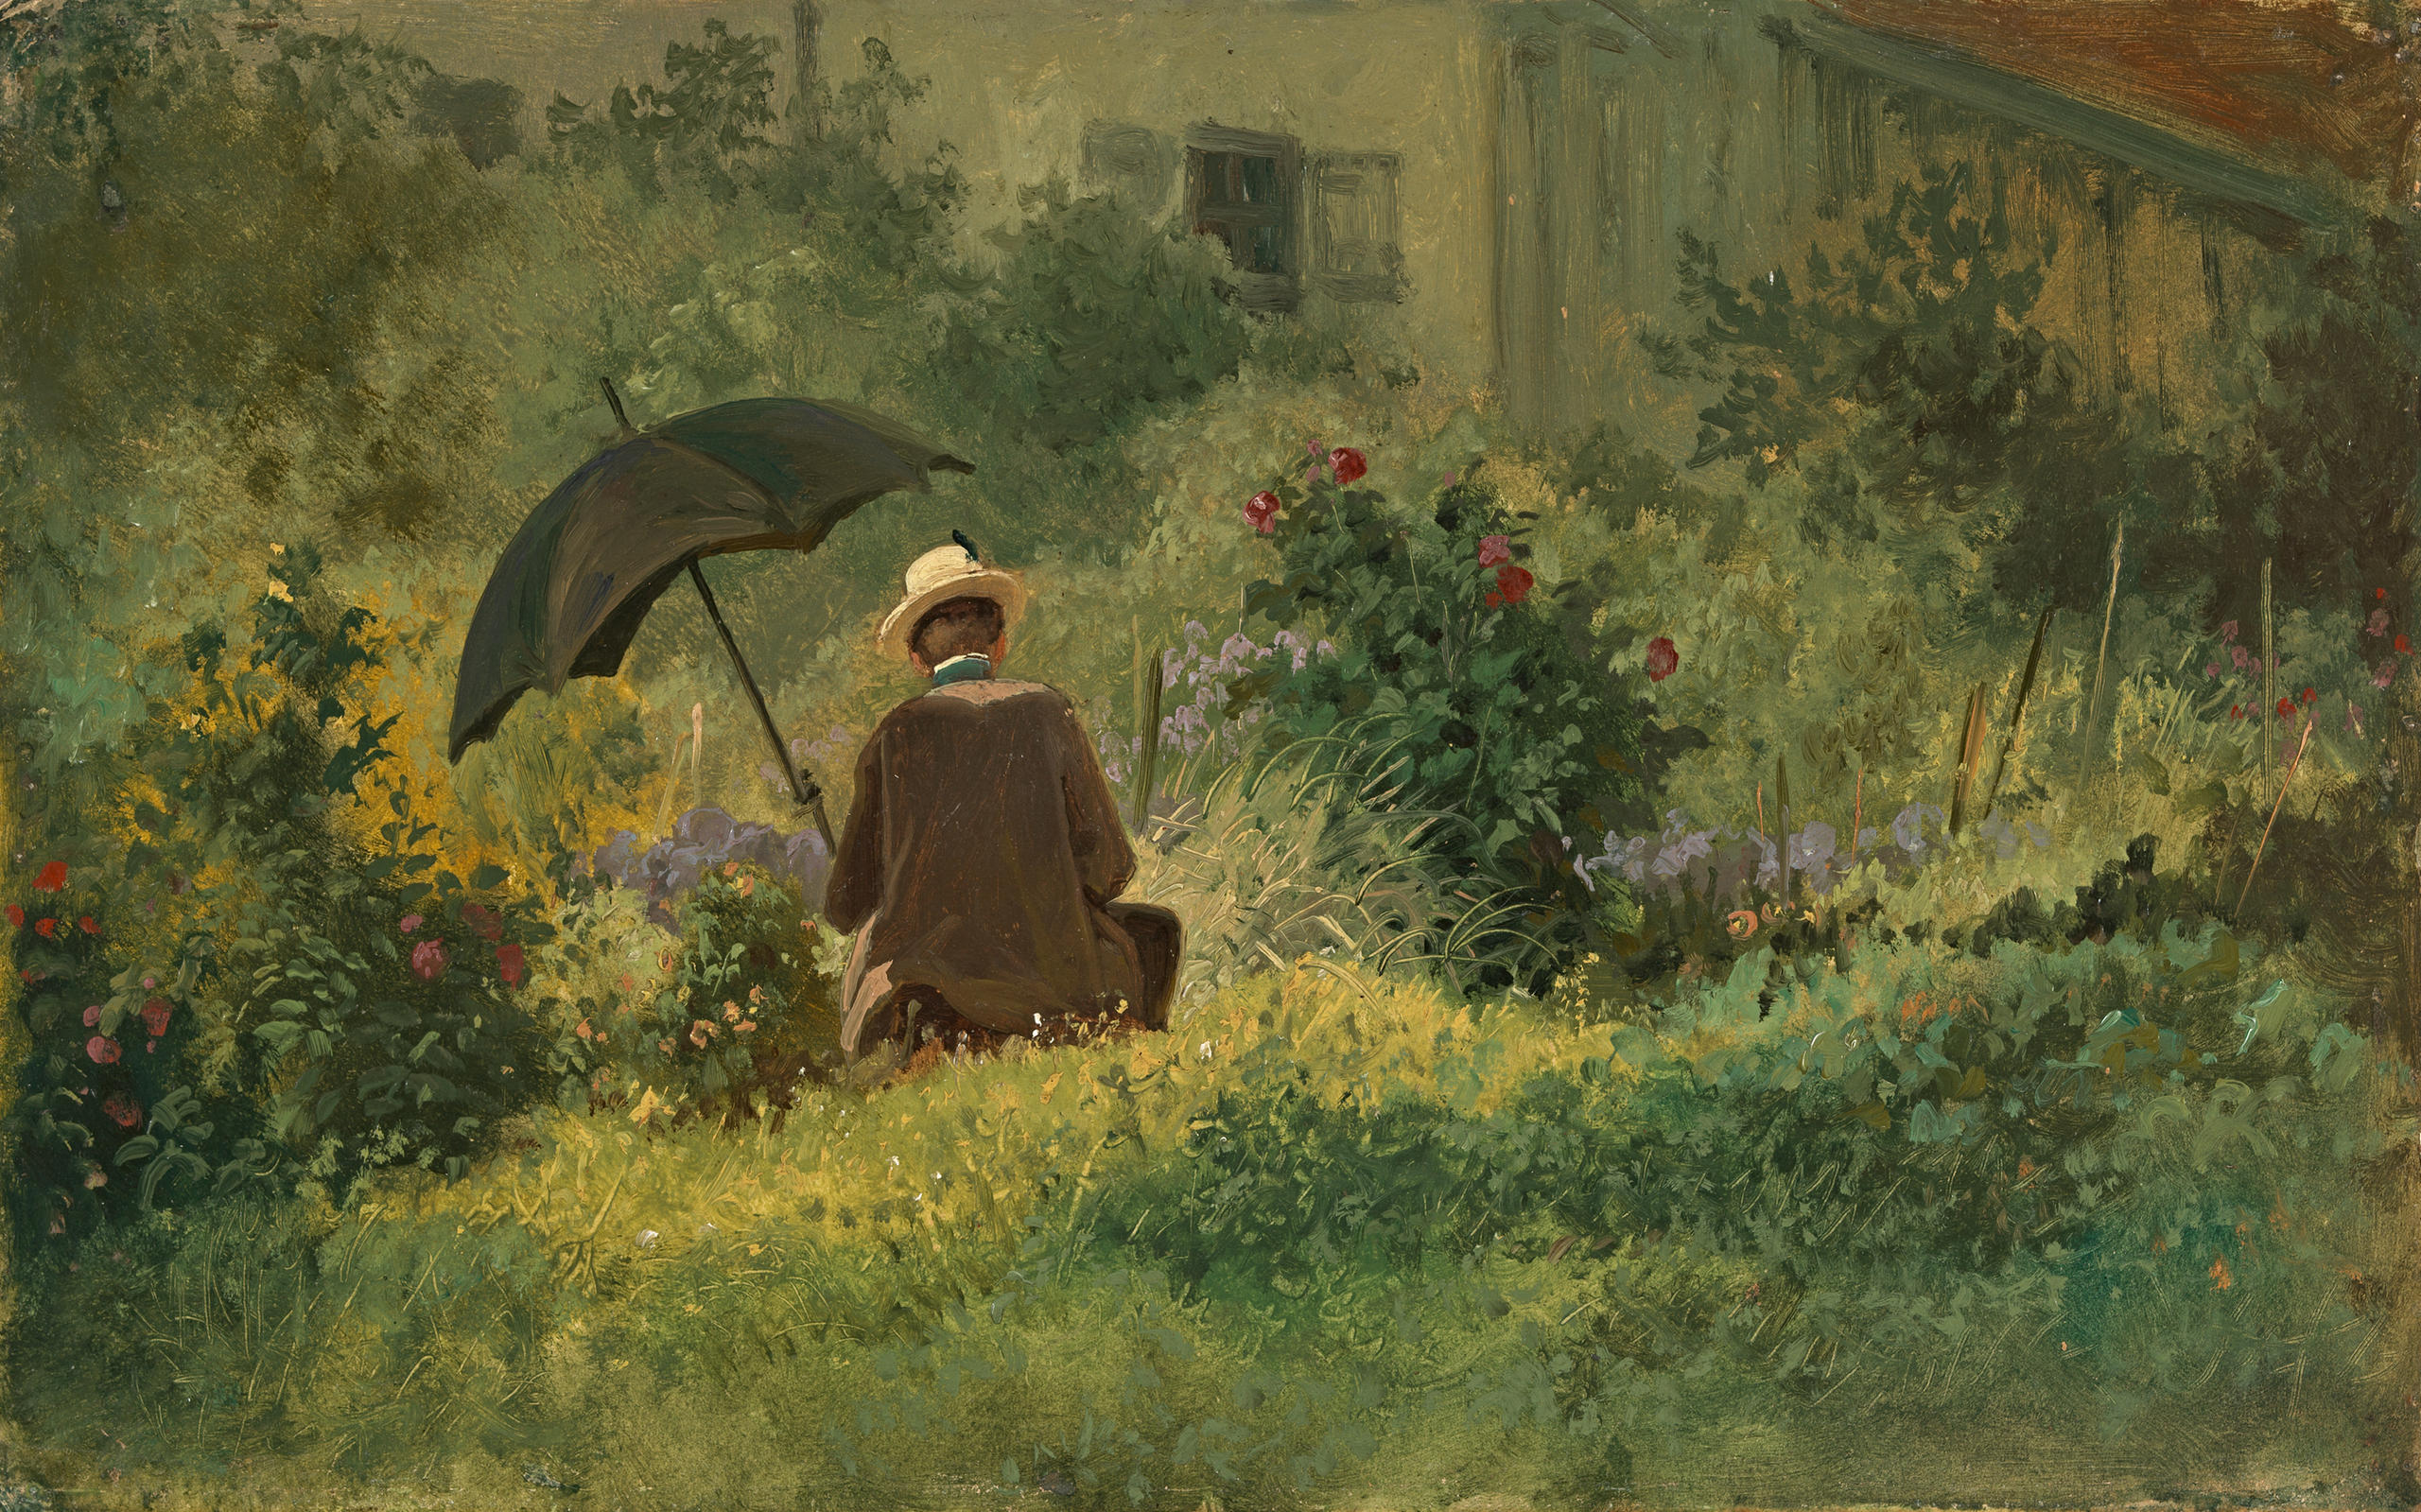 Sitzender Mann mit Schirm in wildem grünem Garten.